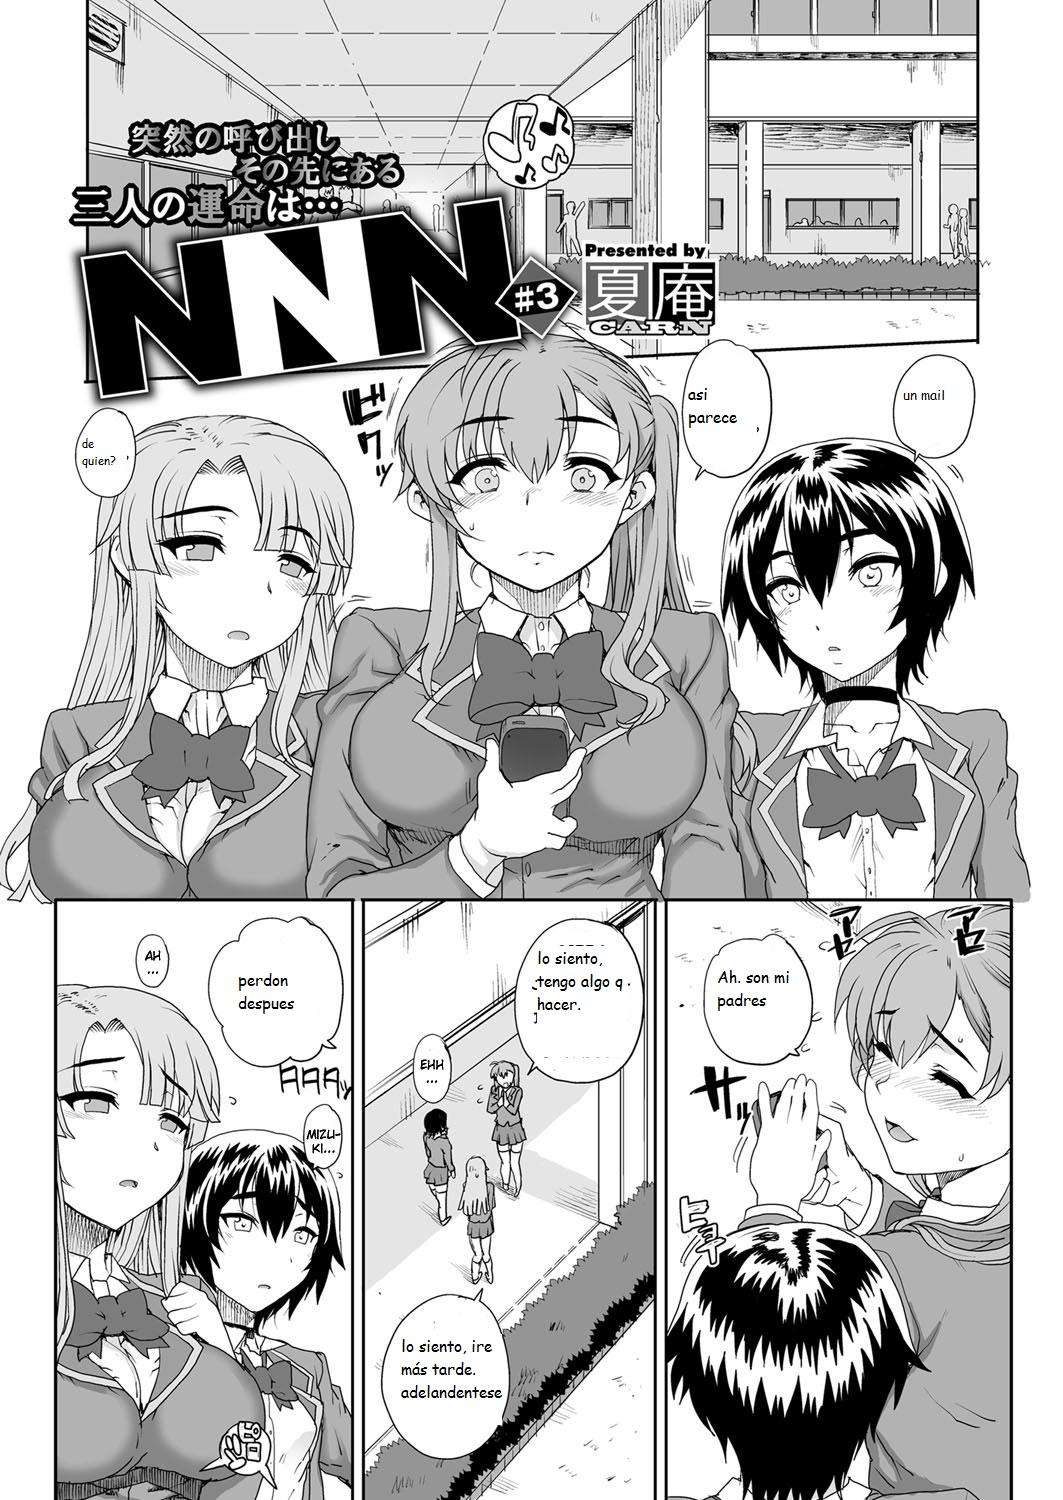 NNN 3 Chapter-1 - 0